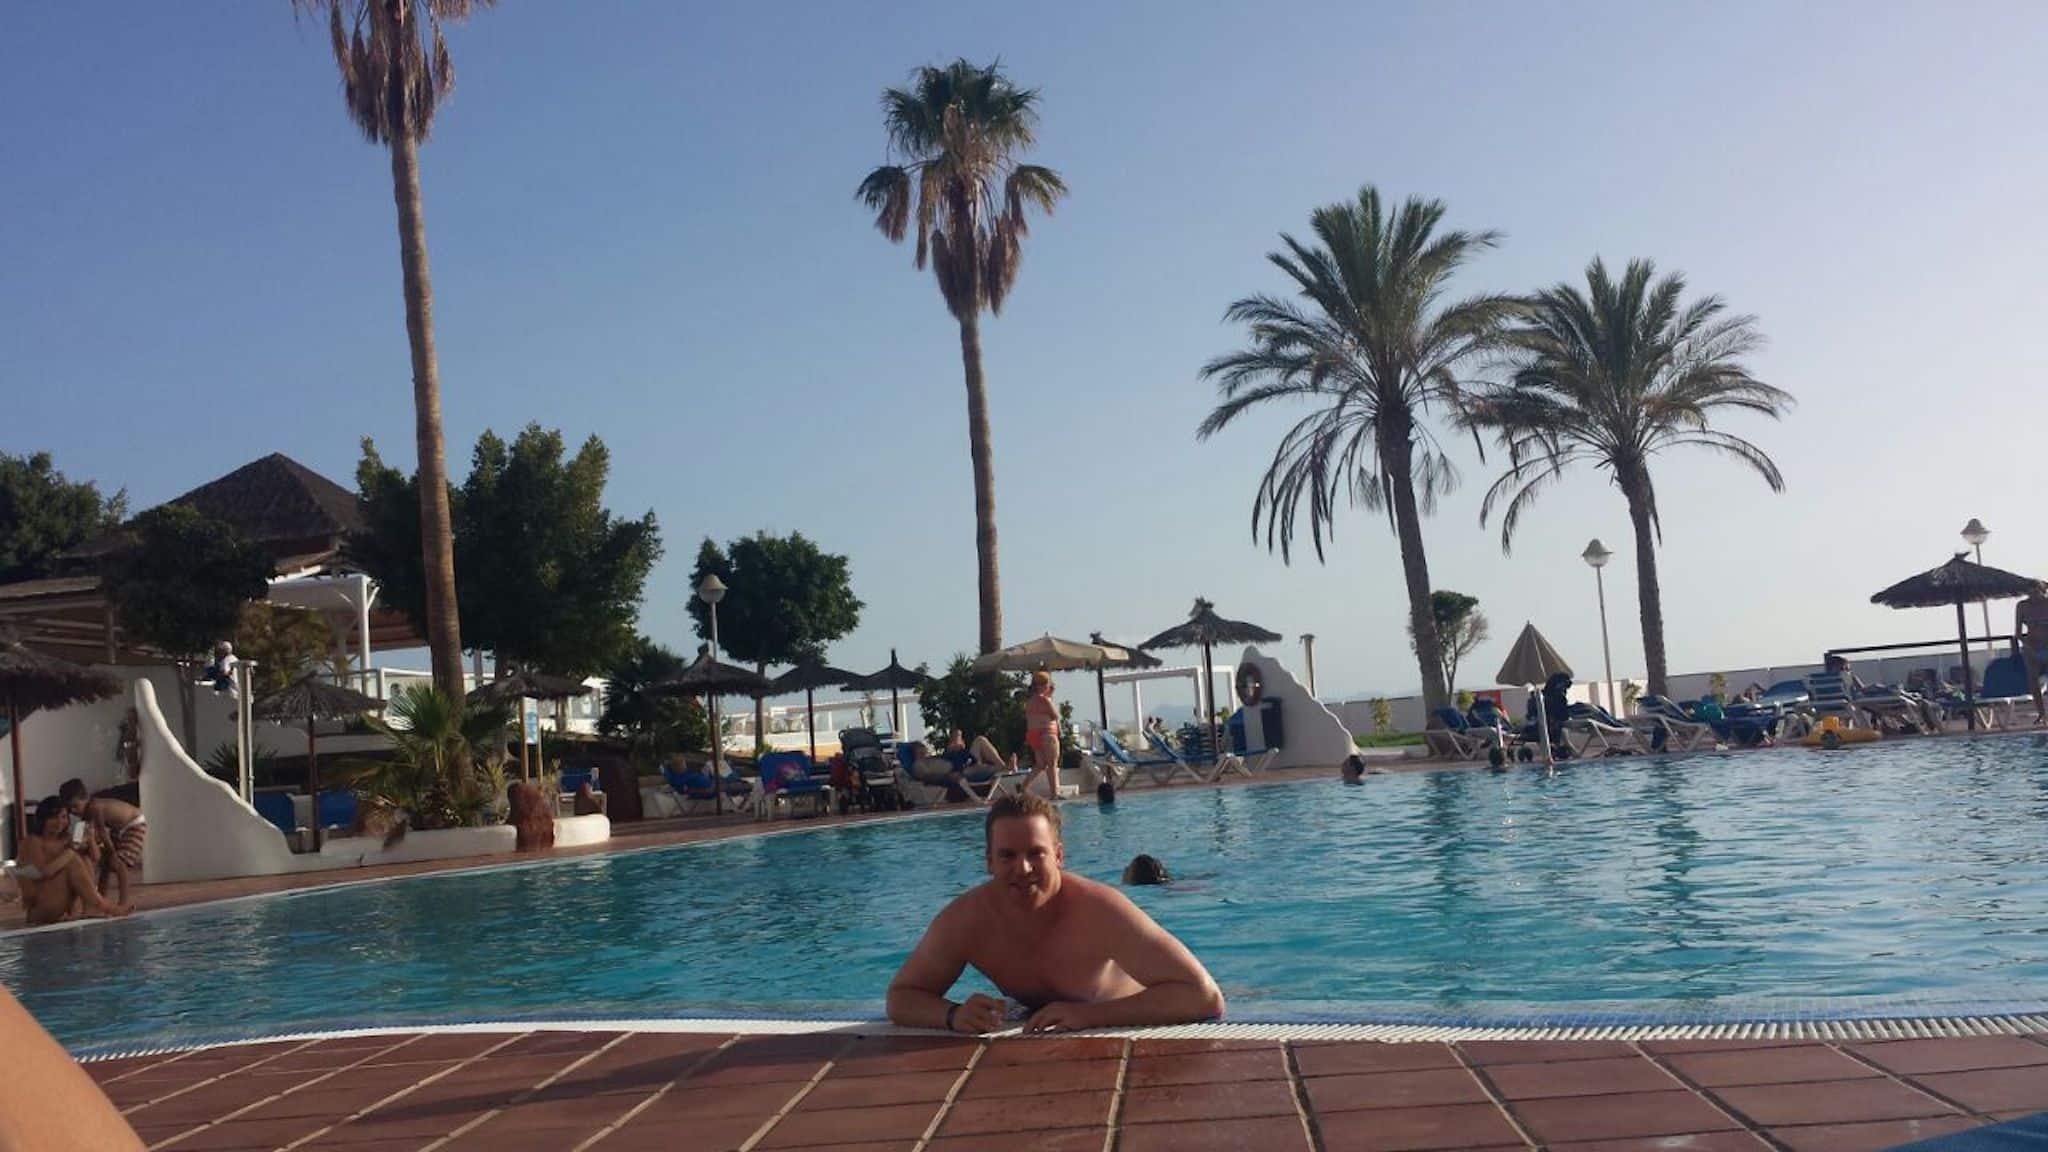 Rejseberetning Lanzarote: Efter ankomsten til Sandos Papagayo Hotel slappede vi først af i poolen.